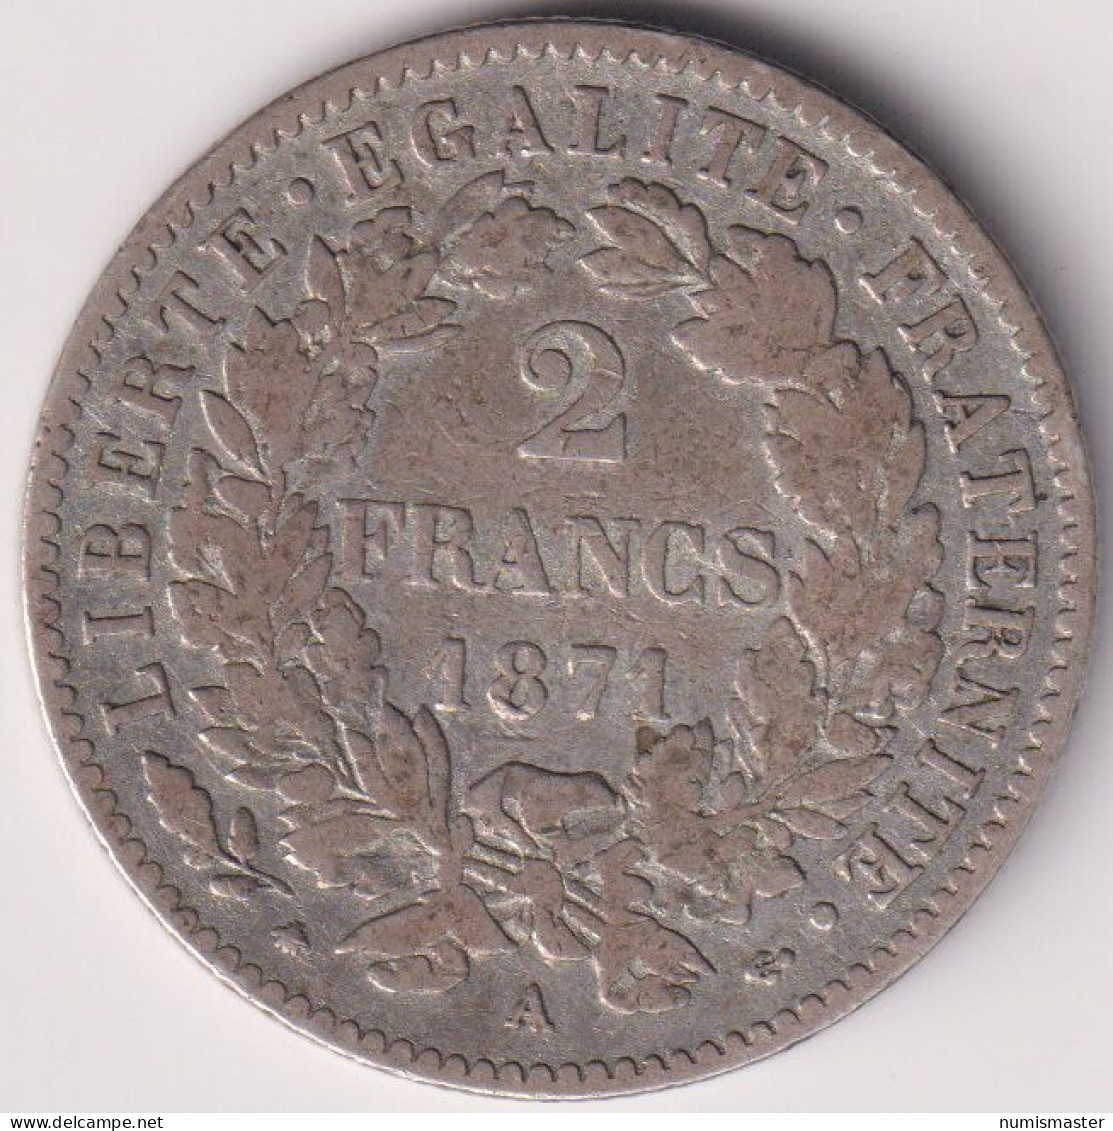 FRANCE , 2 FRANCS 1871 A - 1871 La Commune